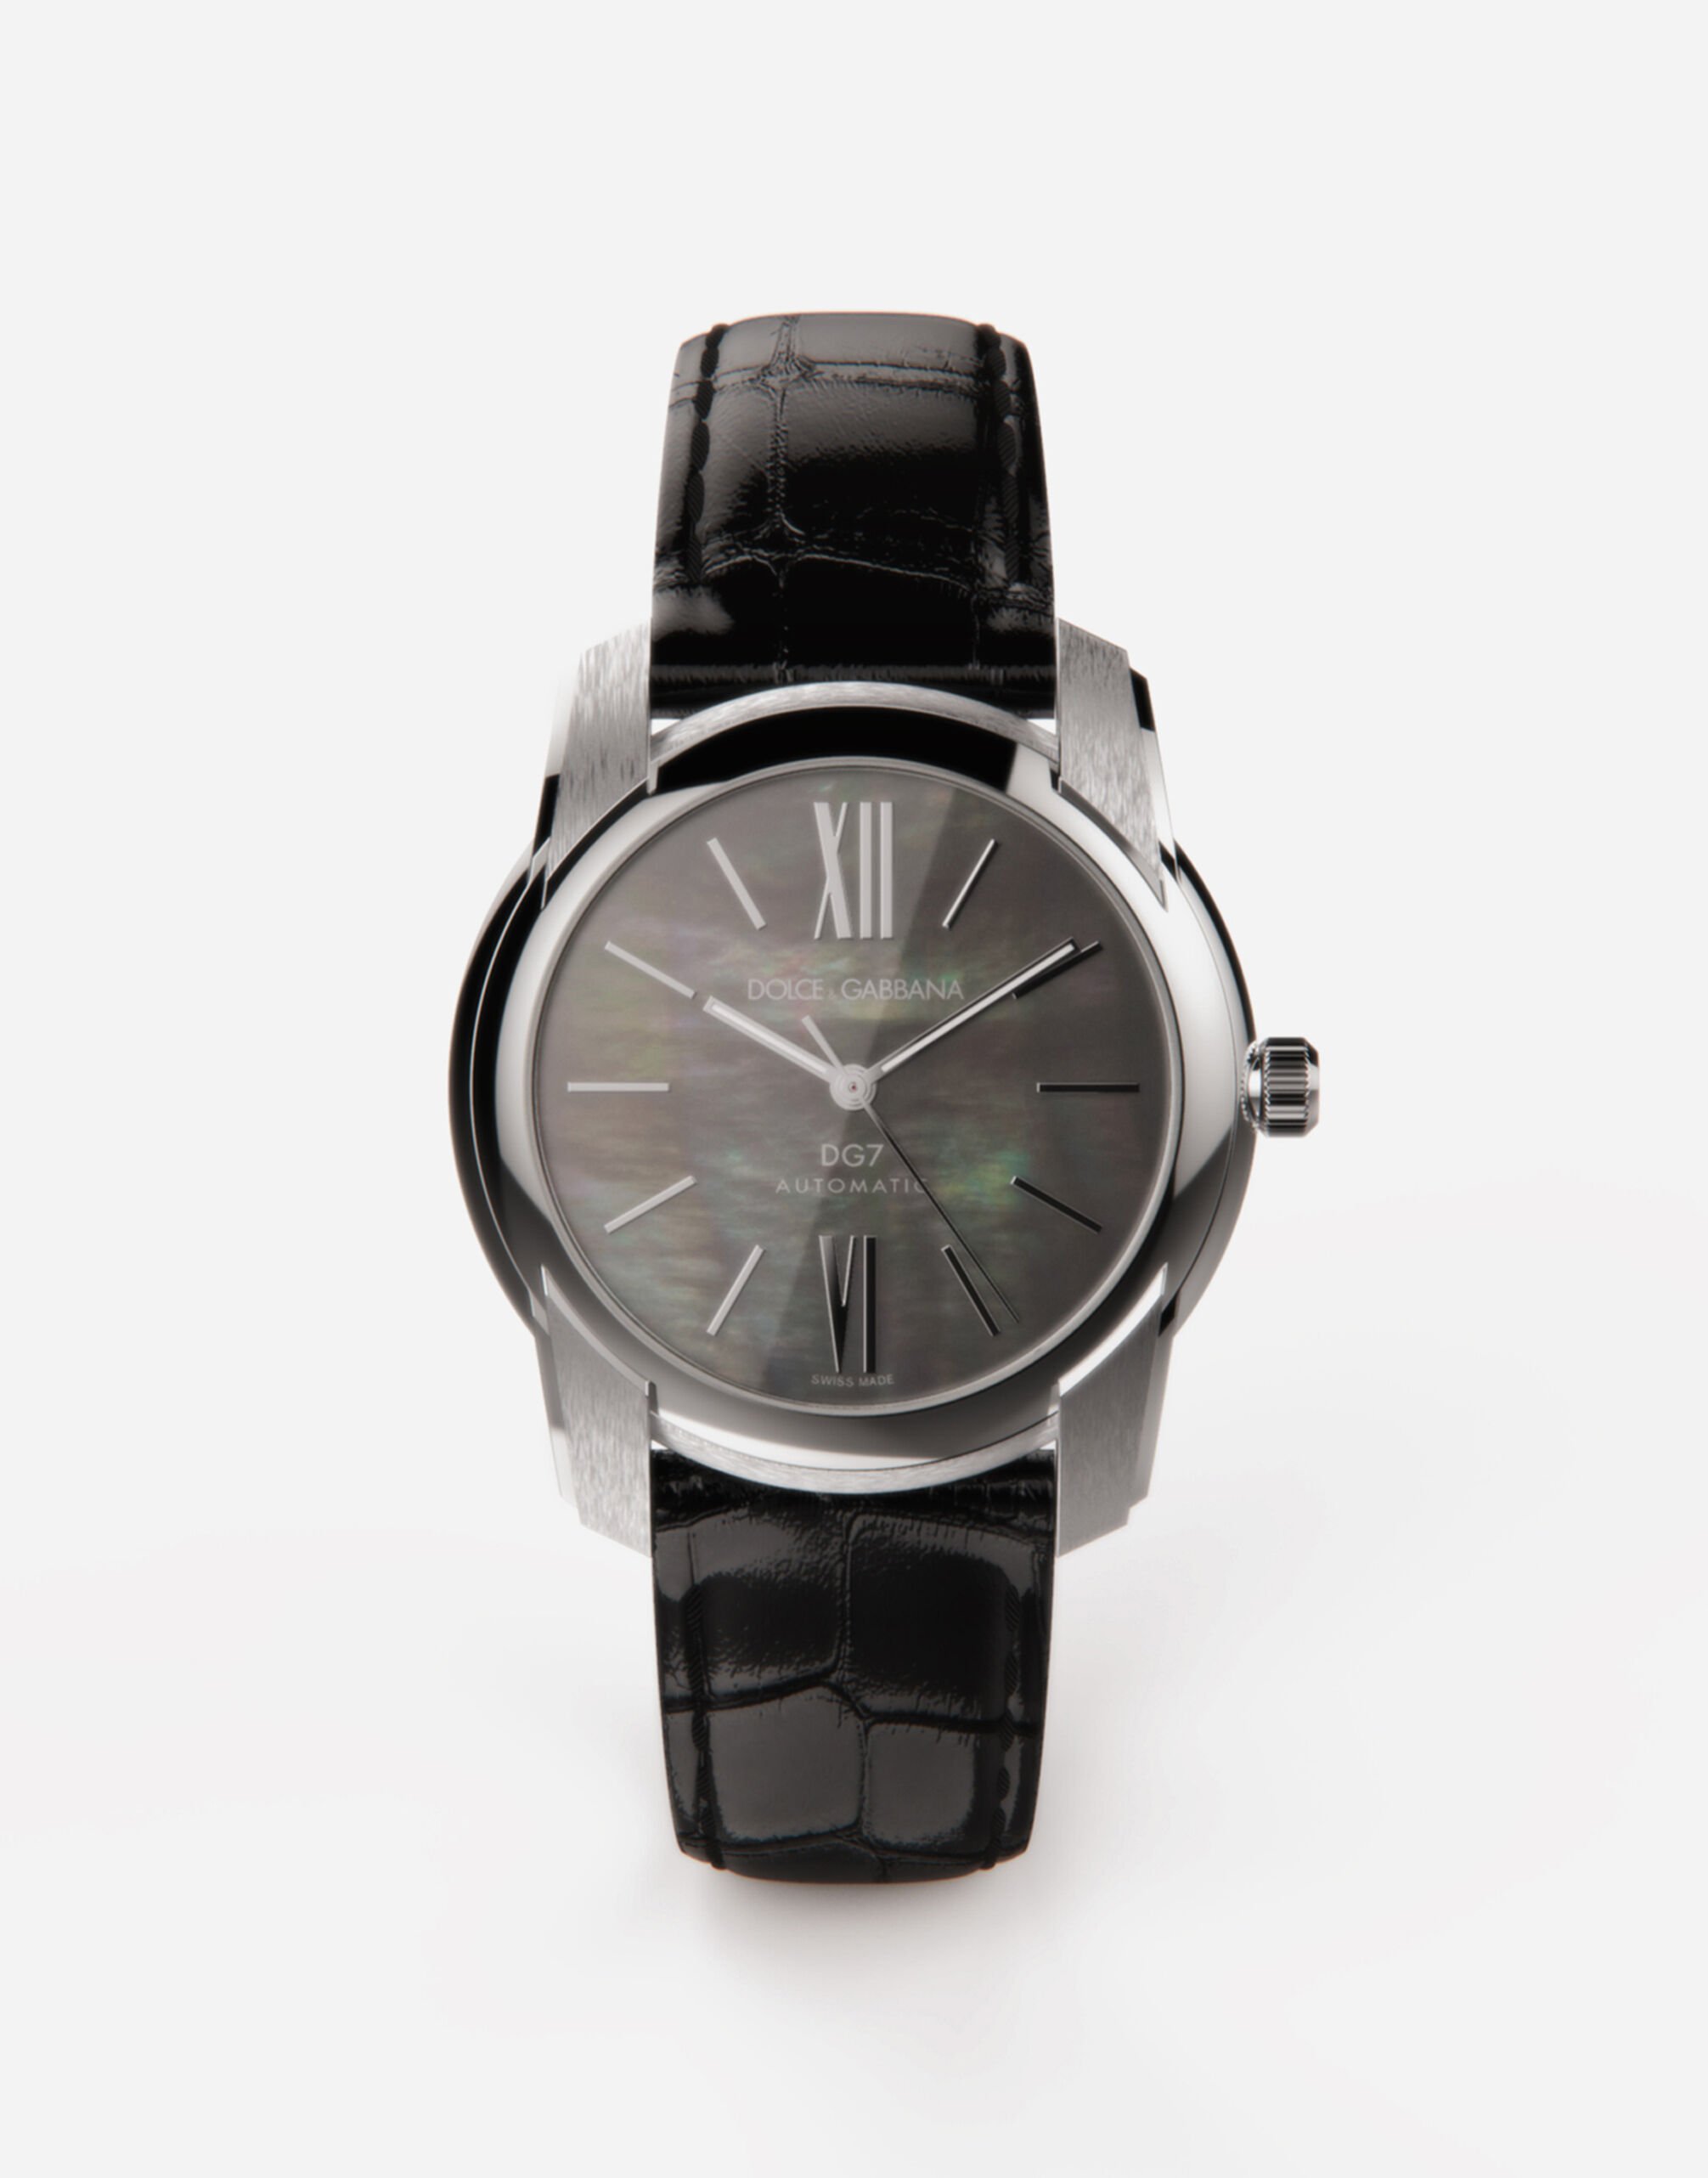 Dolce & Gabbana Uhr DG7 aus stahl mit schwarzem perlmutt BORDEAUX WWEEGGWW045